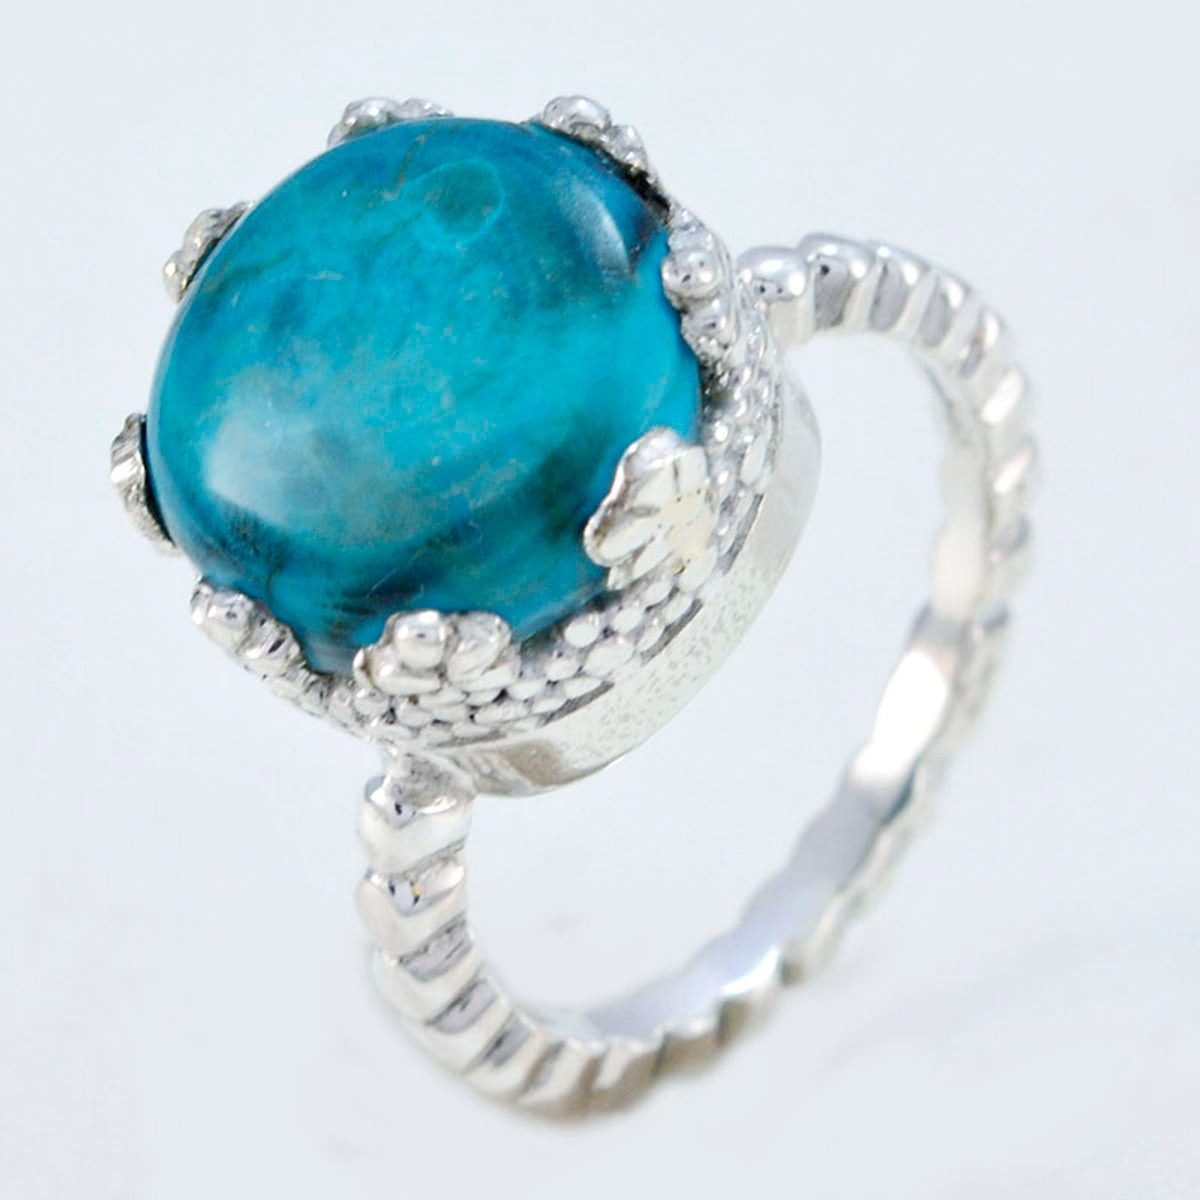 Riyo aangename edelsteen turquoise massief zilveren ring pinguïn sieraden